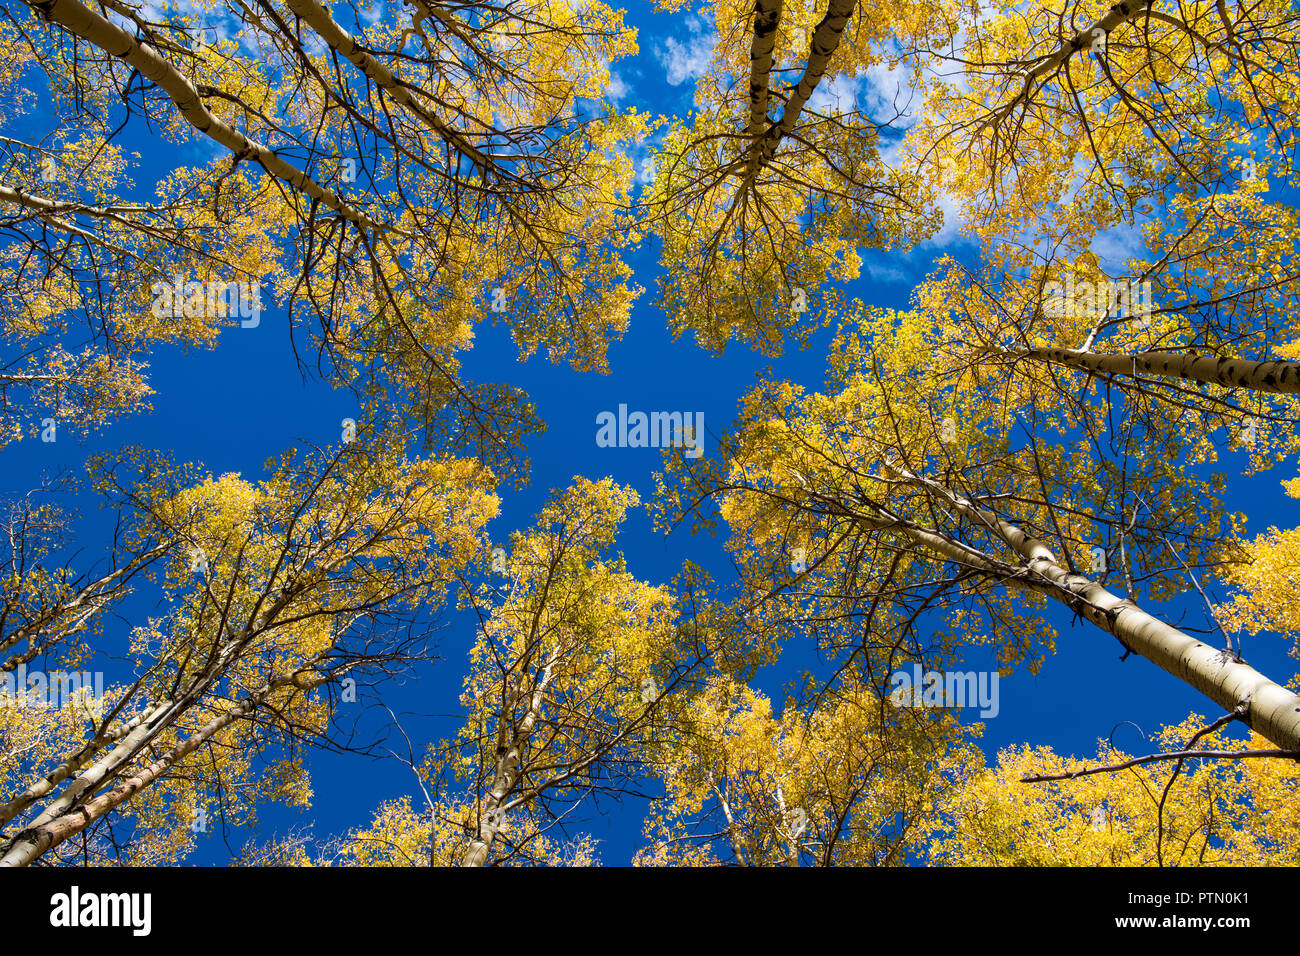 Anzeigen suchen bis zu den Gipfeln des Aspen Bäume mit goldgelben Laub unter einem strahlend blauen Himmel Stockfoto